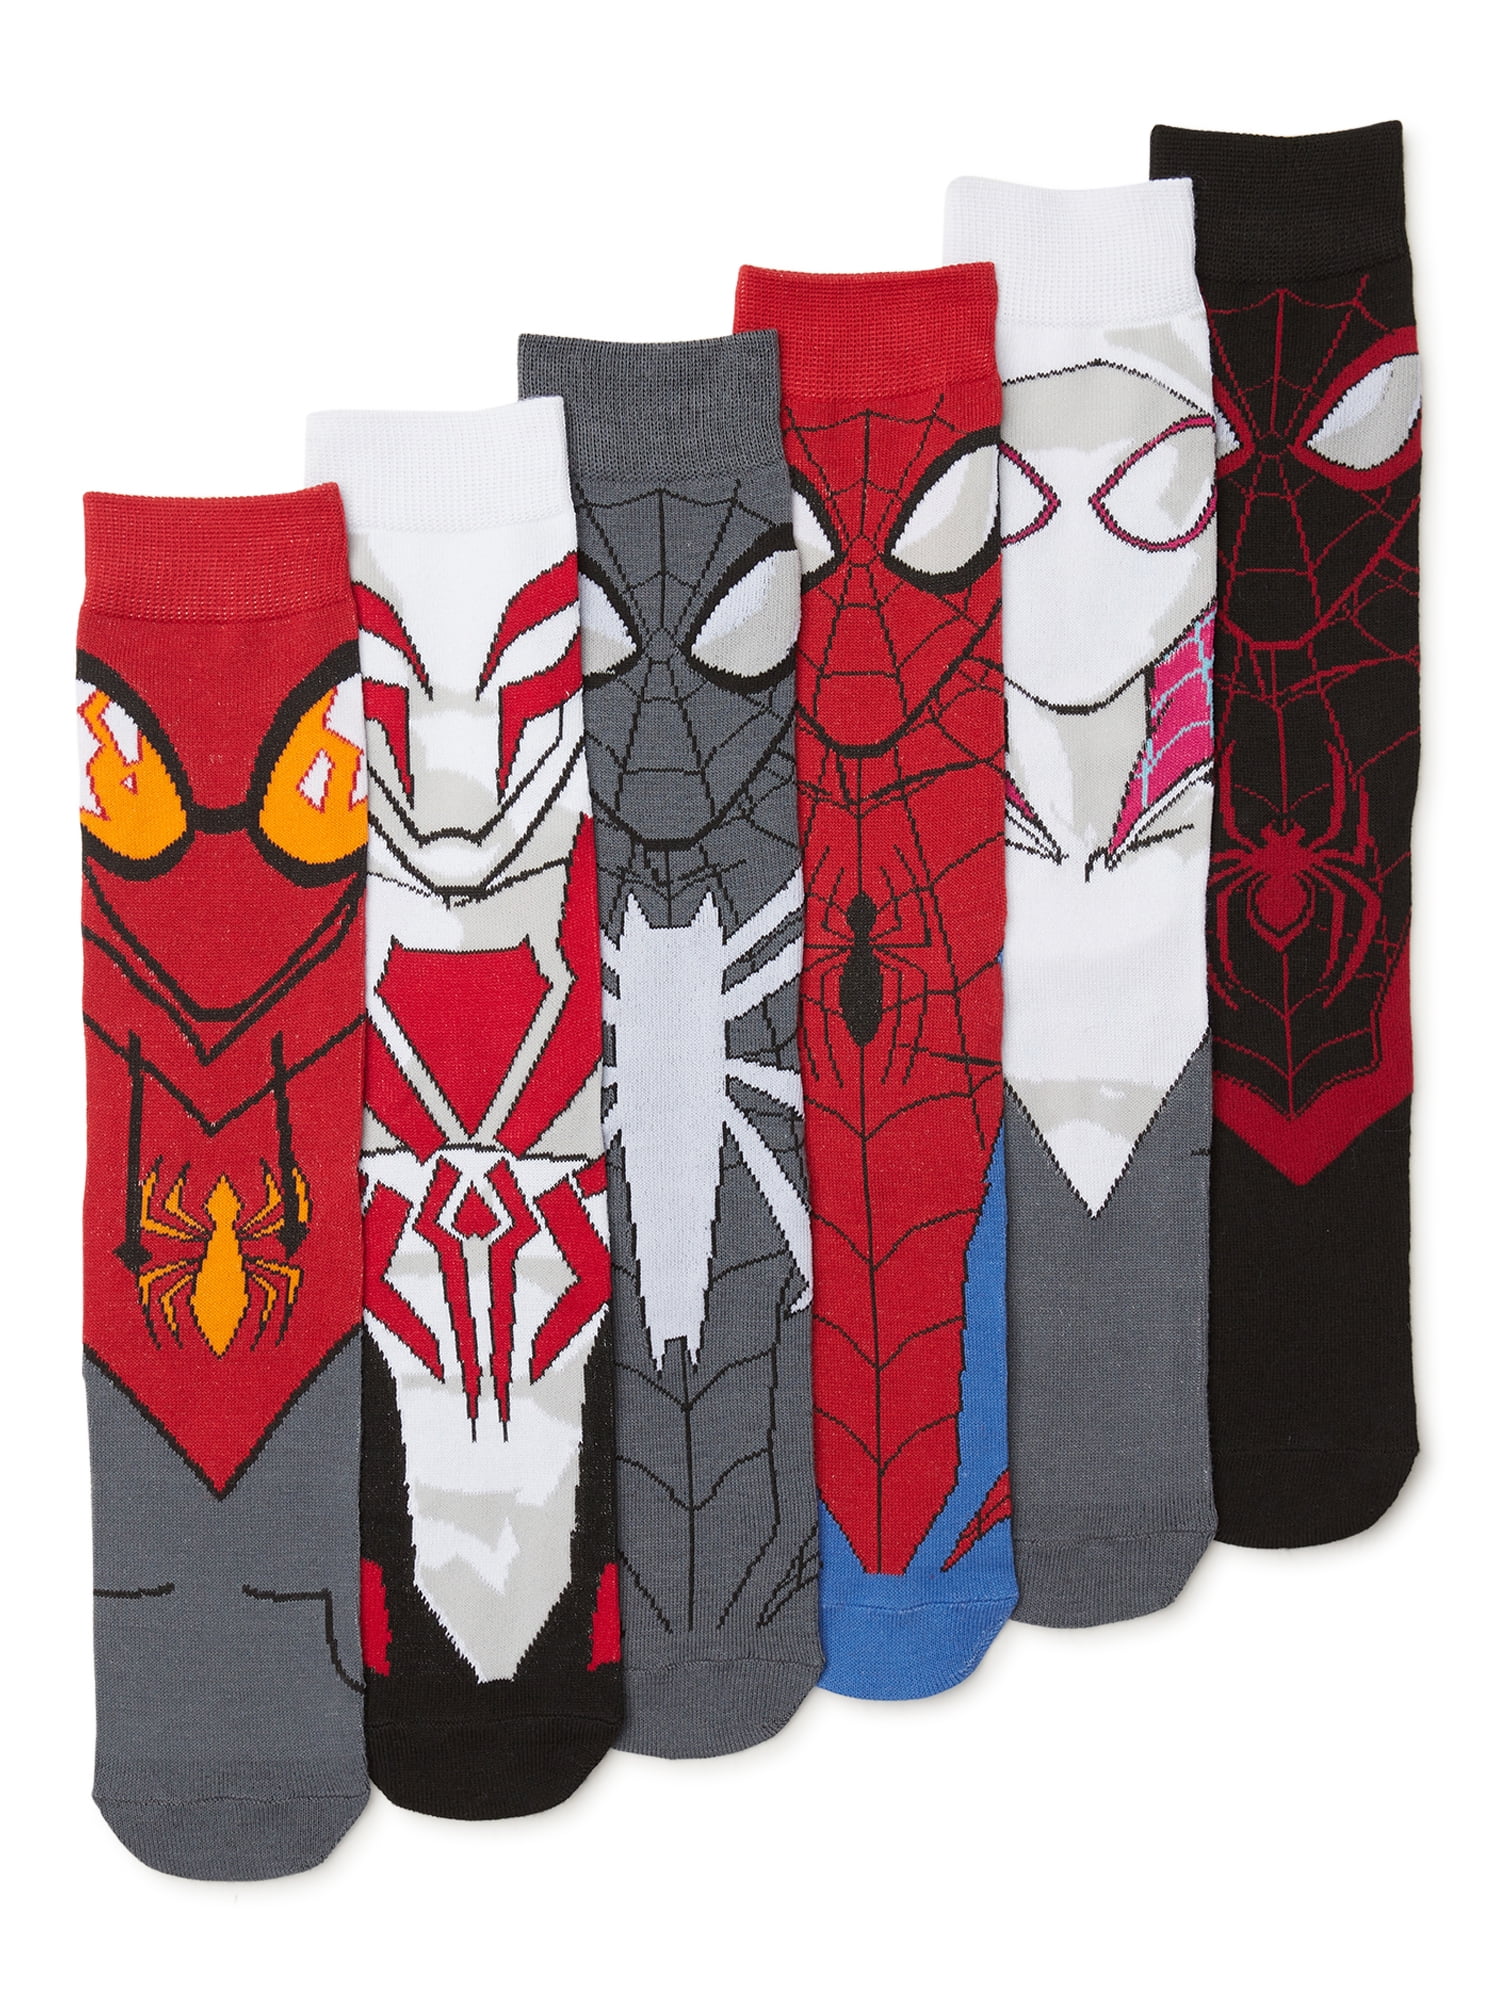 Spider-Man Men's Crew Socks, 6-Pack 